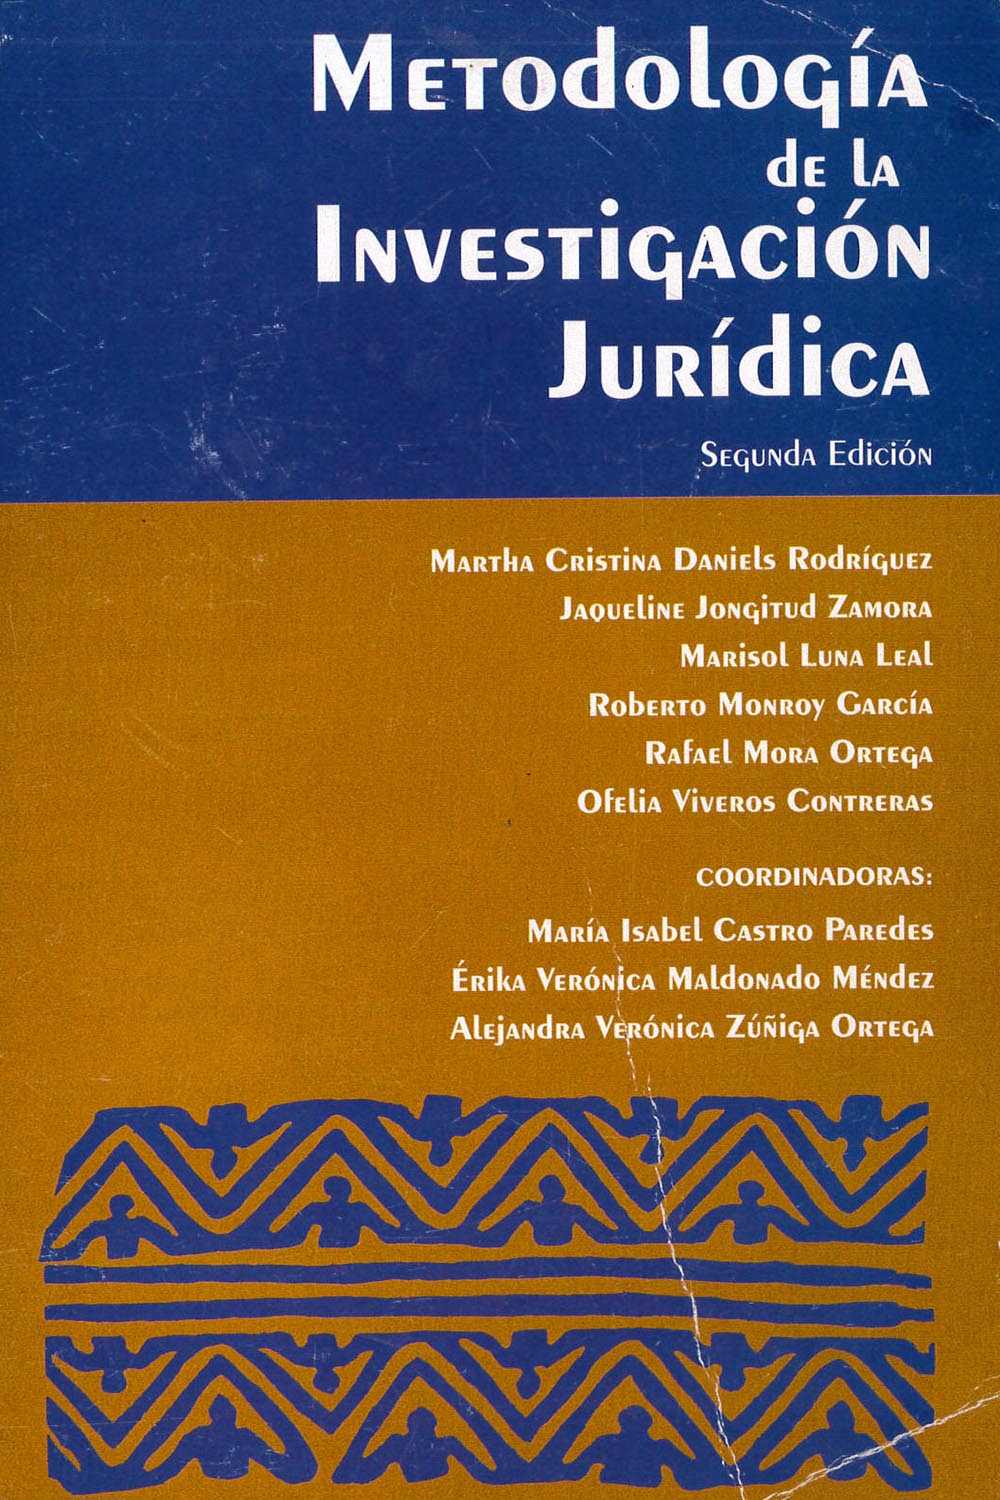 10 / 16 - K85 M48 2011 Metodología de la Investigación Jurídica
Universidad Veracruzana, México 2011